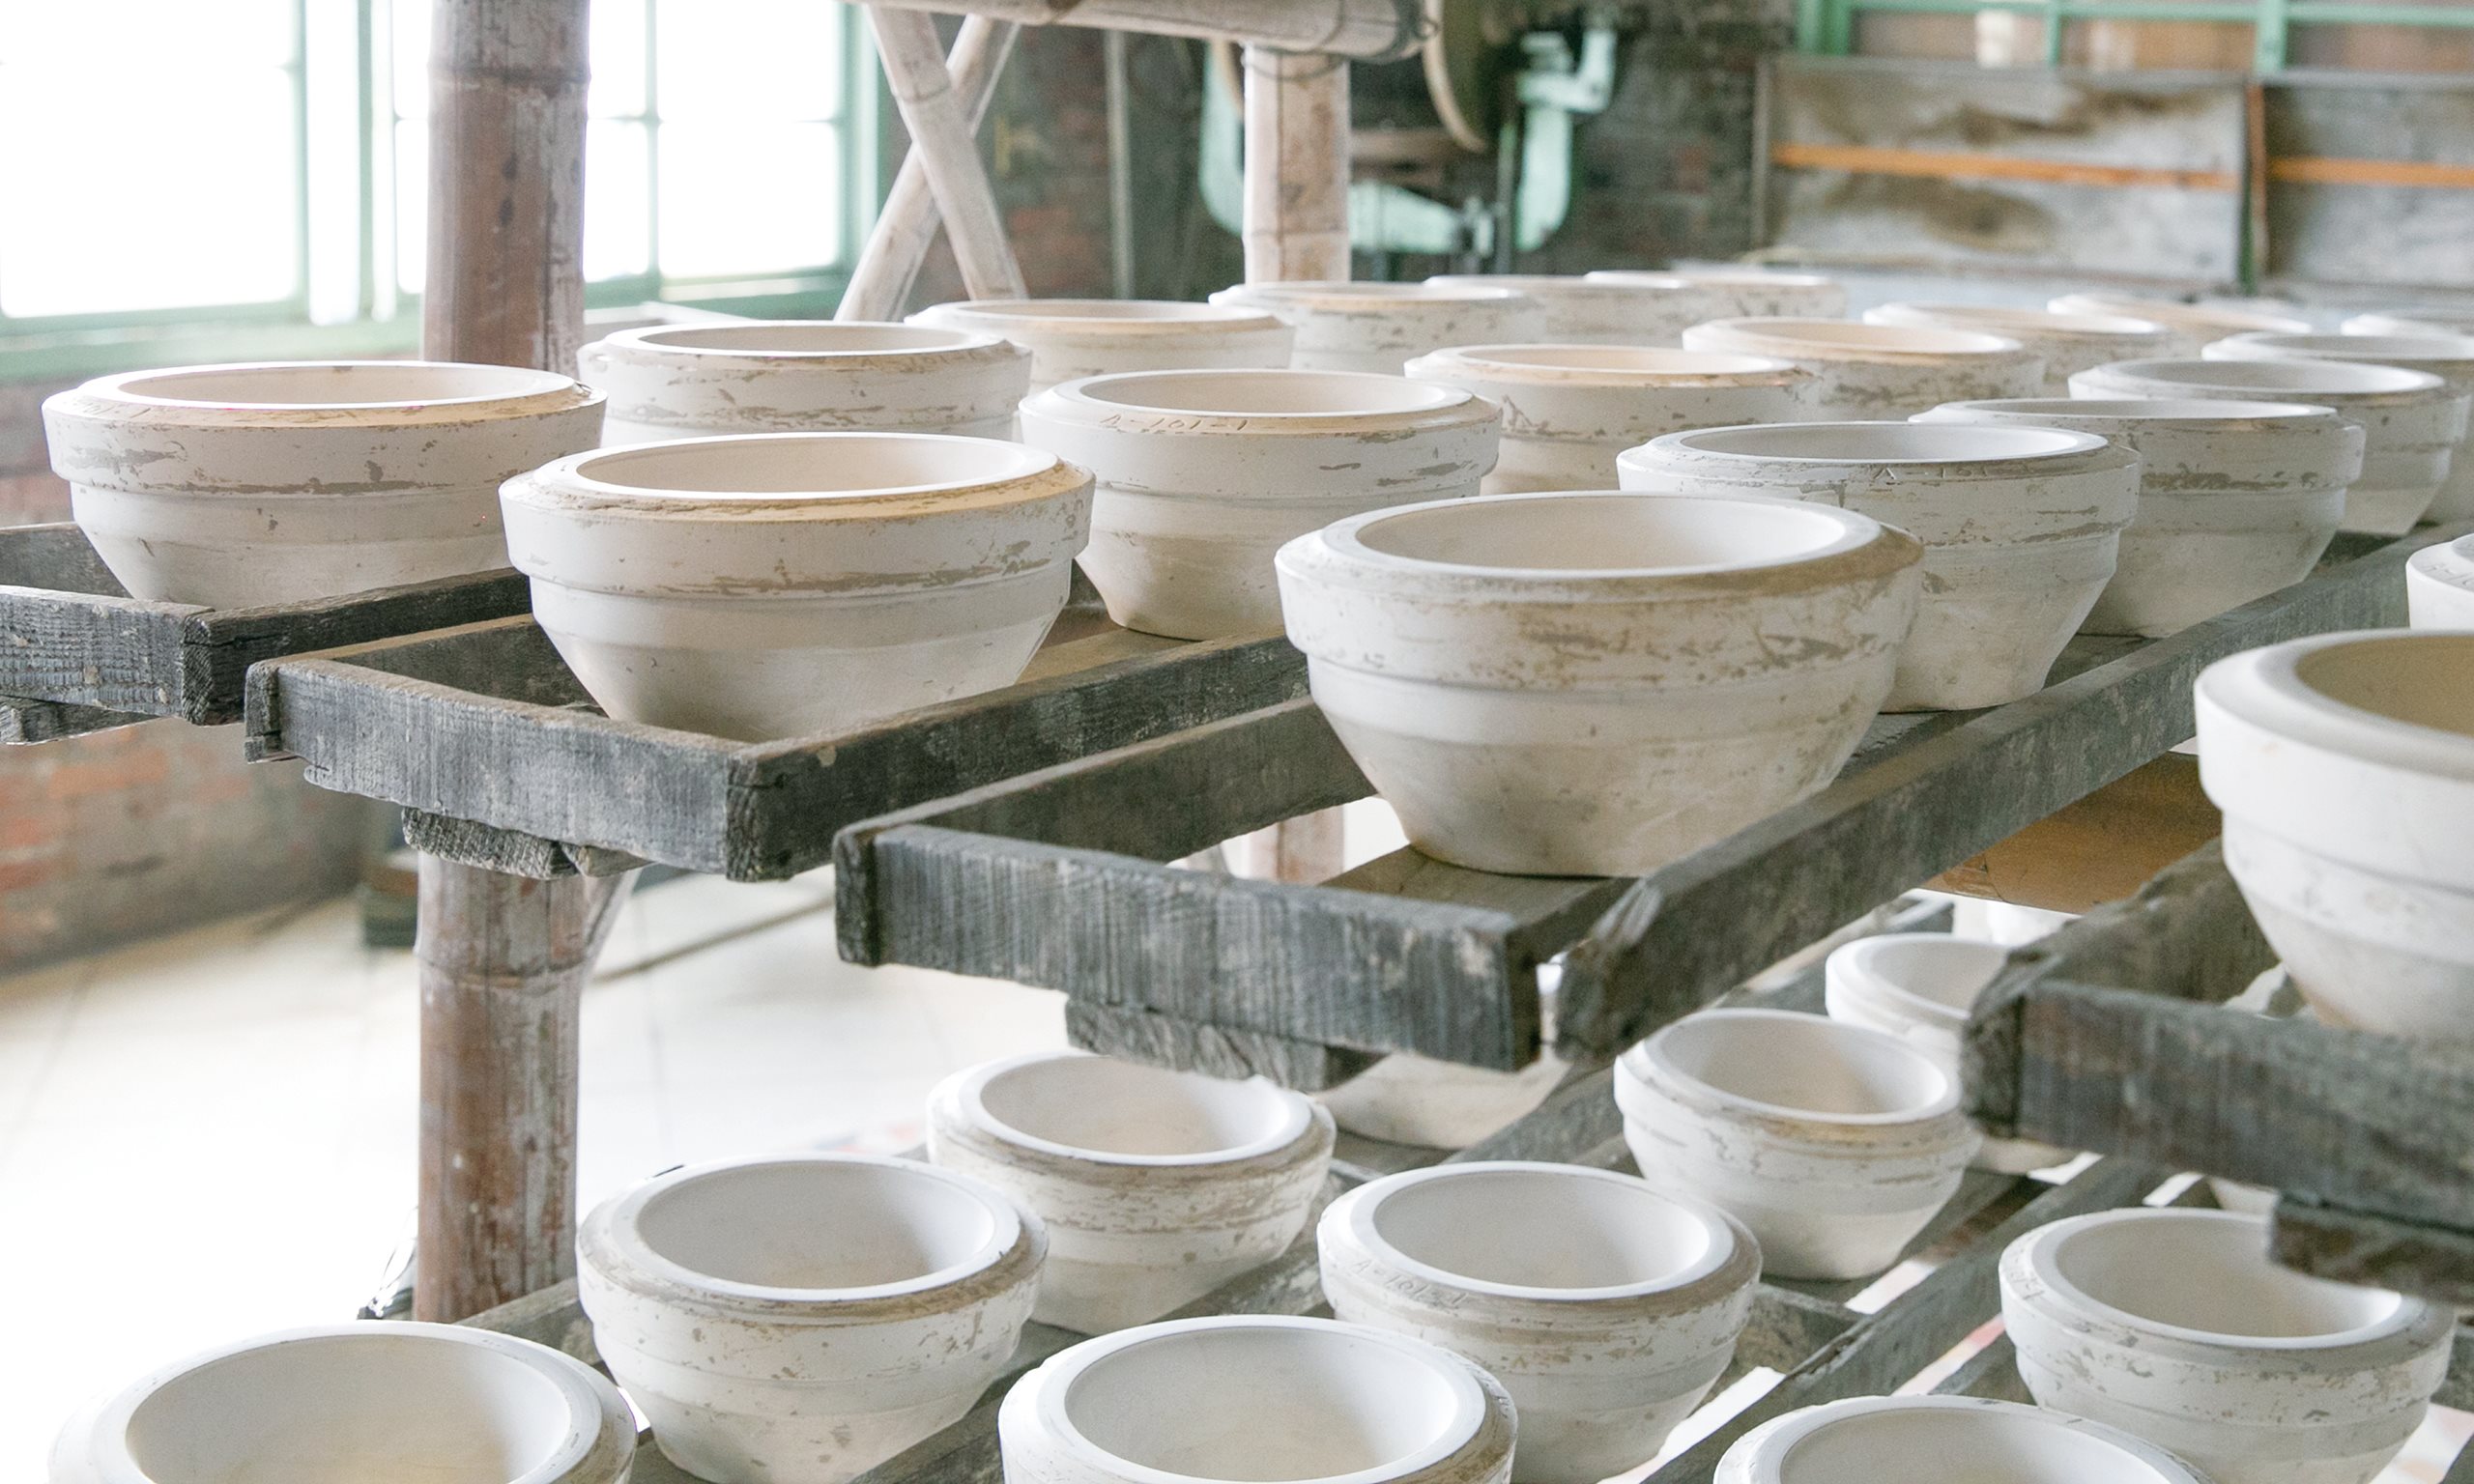 〖no.28主題企劃〗記憶中熟悉的那碗——陶瓷碗的誕生 ╳ 古早碗製程